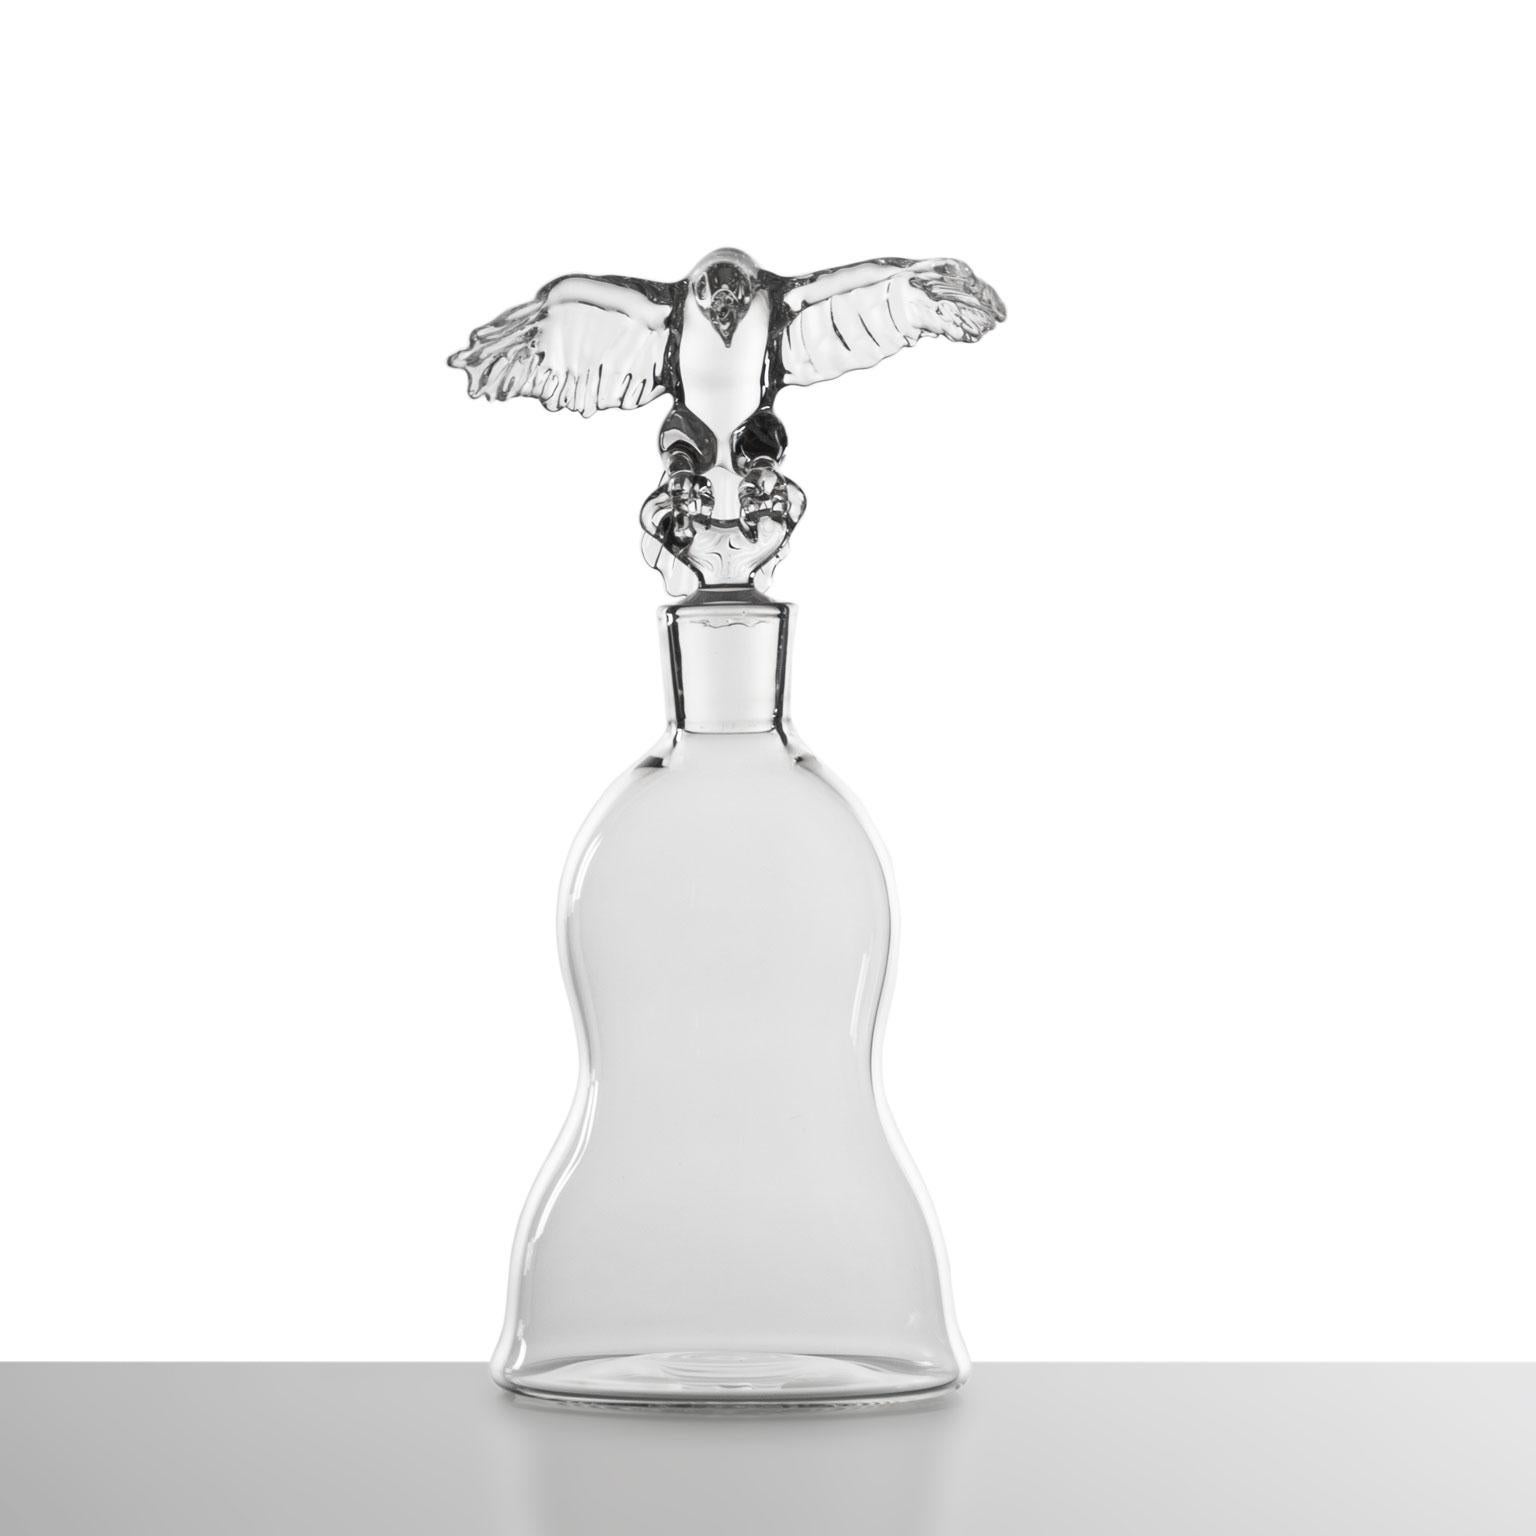 Eagle Bottle
Eine mundgeblasene Glasflasche von Simone Crestani

Die Königin des Himmels, majestätisch und weise, breitet ihre Flügel aus, bereit, dorthin zu fliegen, wo niemand jemals hinkommt. Der Zauber ihrer Bewegungen ist in dieser Flasche